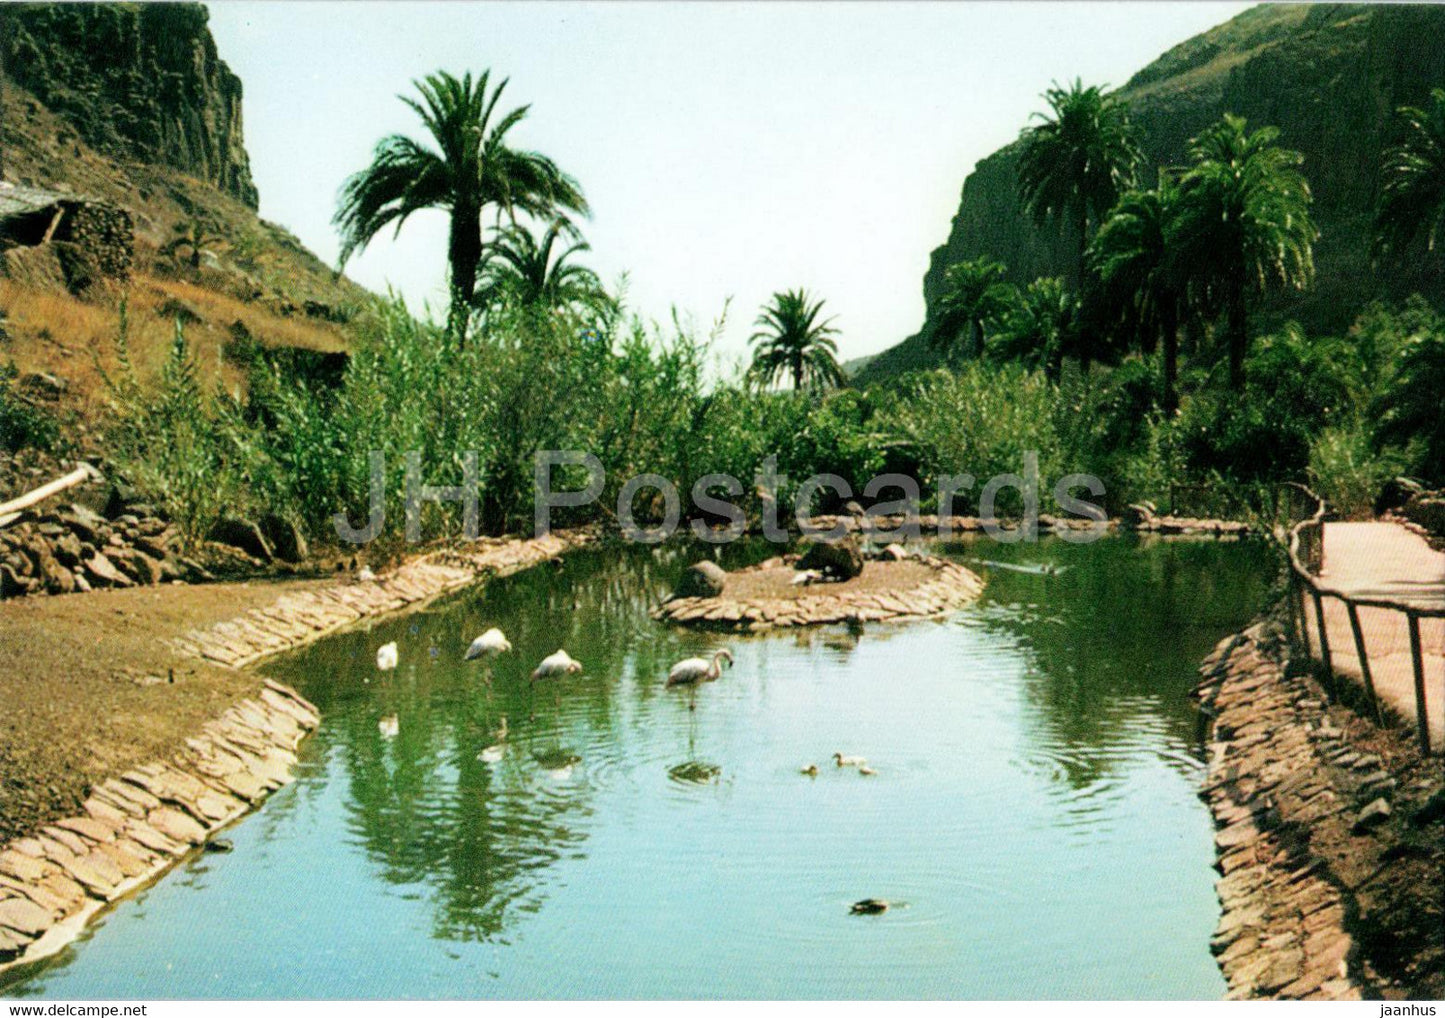 Maspalomas - Los Palmitos Park - birds - Gran Canaria - Spain - unused - JH Postcards